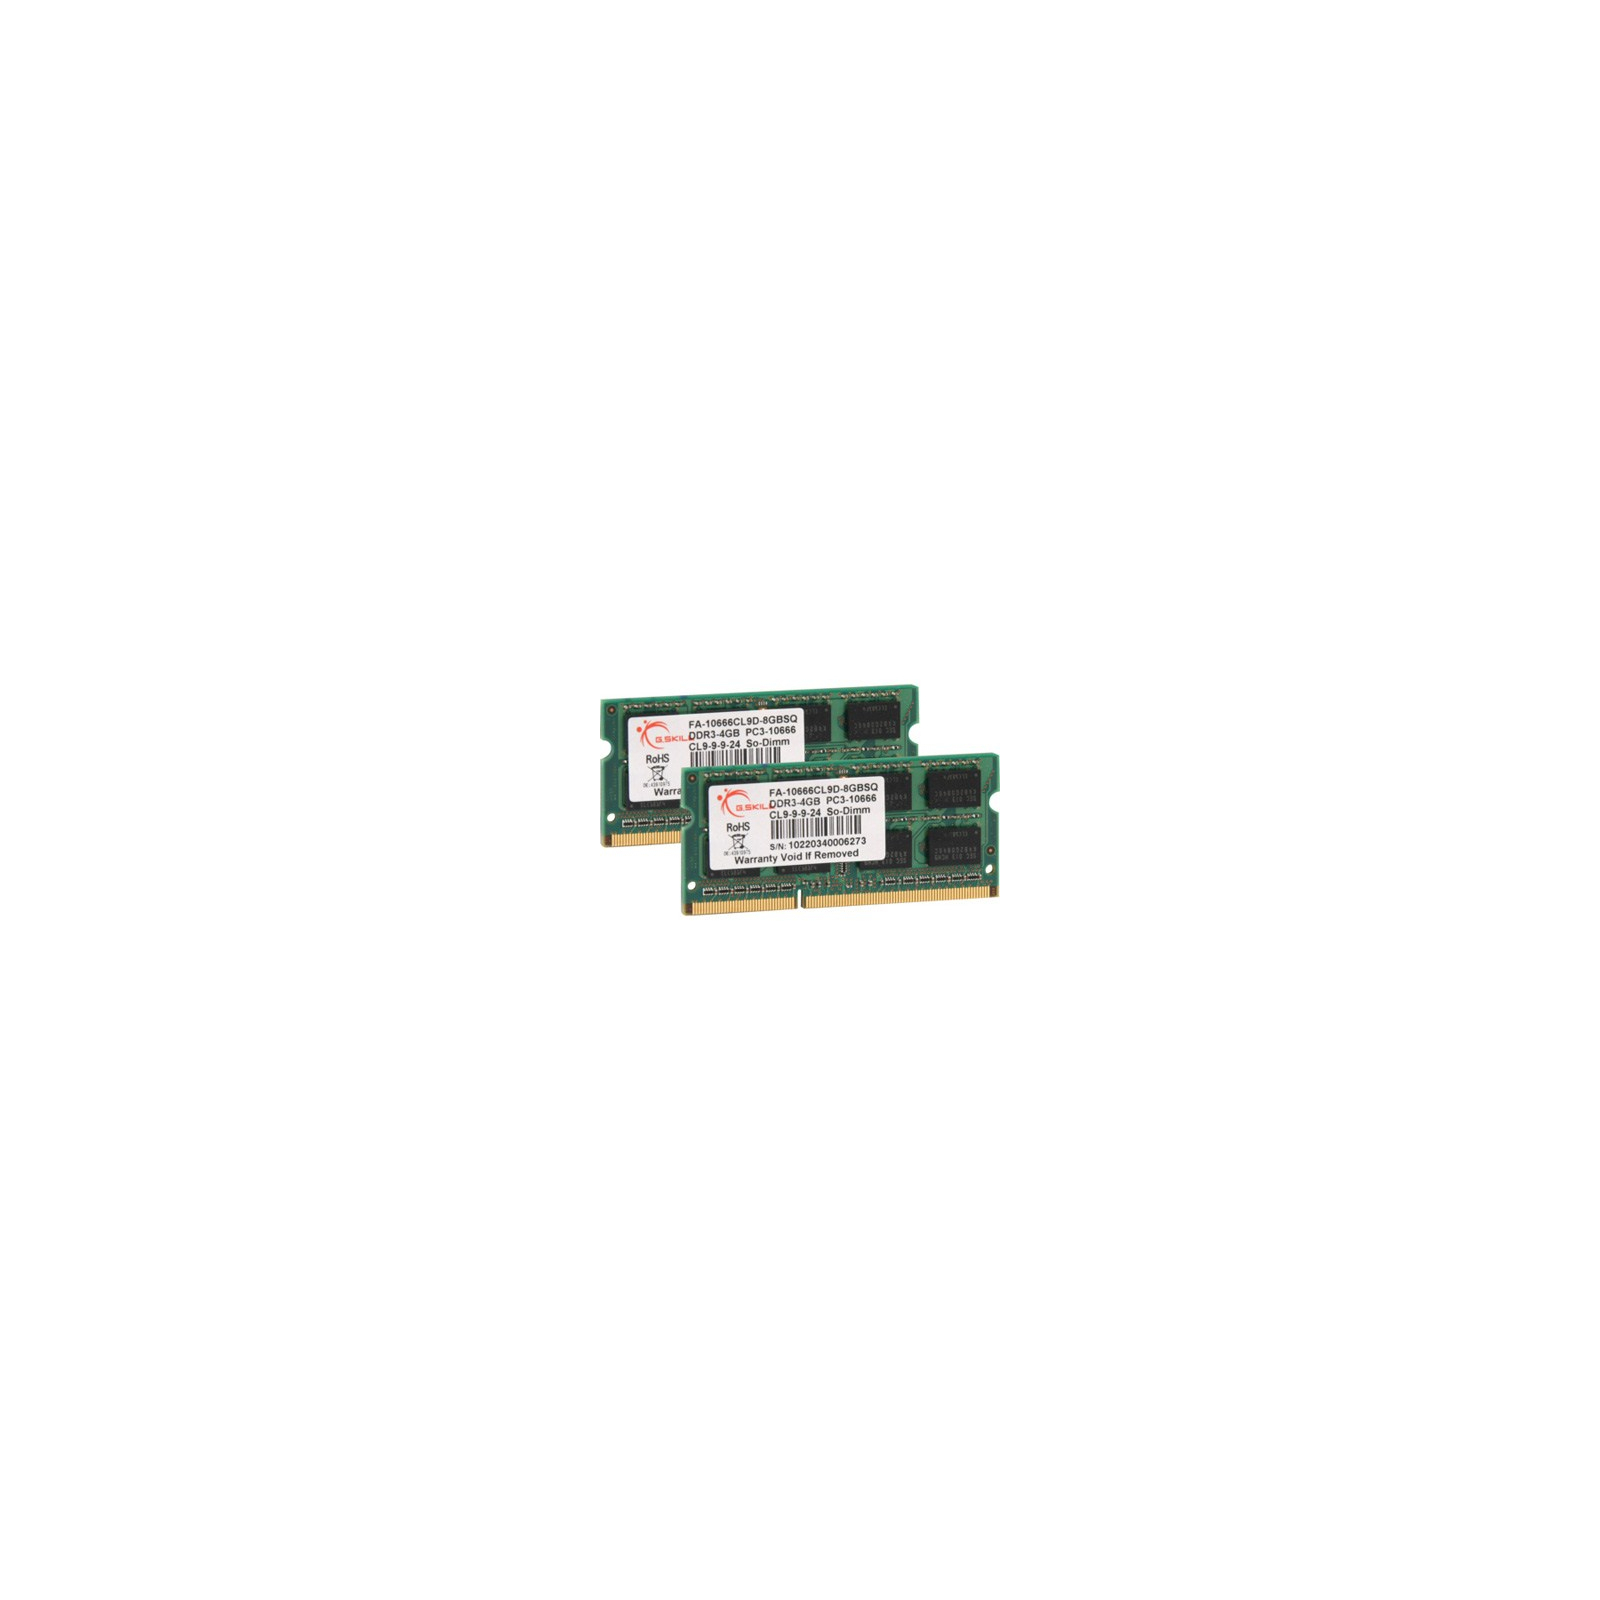 Модуль памяти для ноутбука SoDIMM DDR3 8GB (2x4GB) 1333 MHz G.Skill (FA-10666CL9D-8GBSQ)